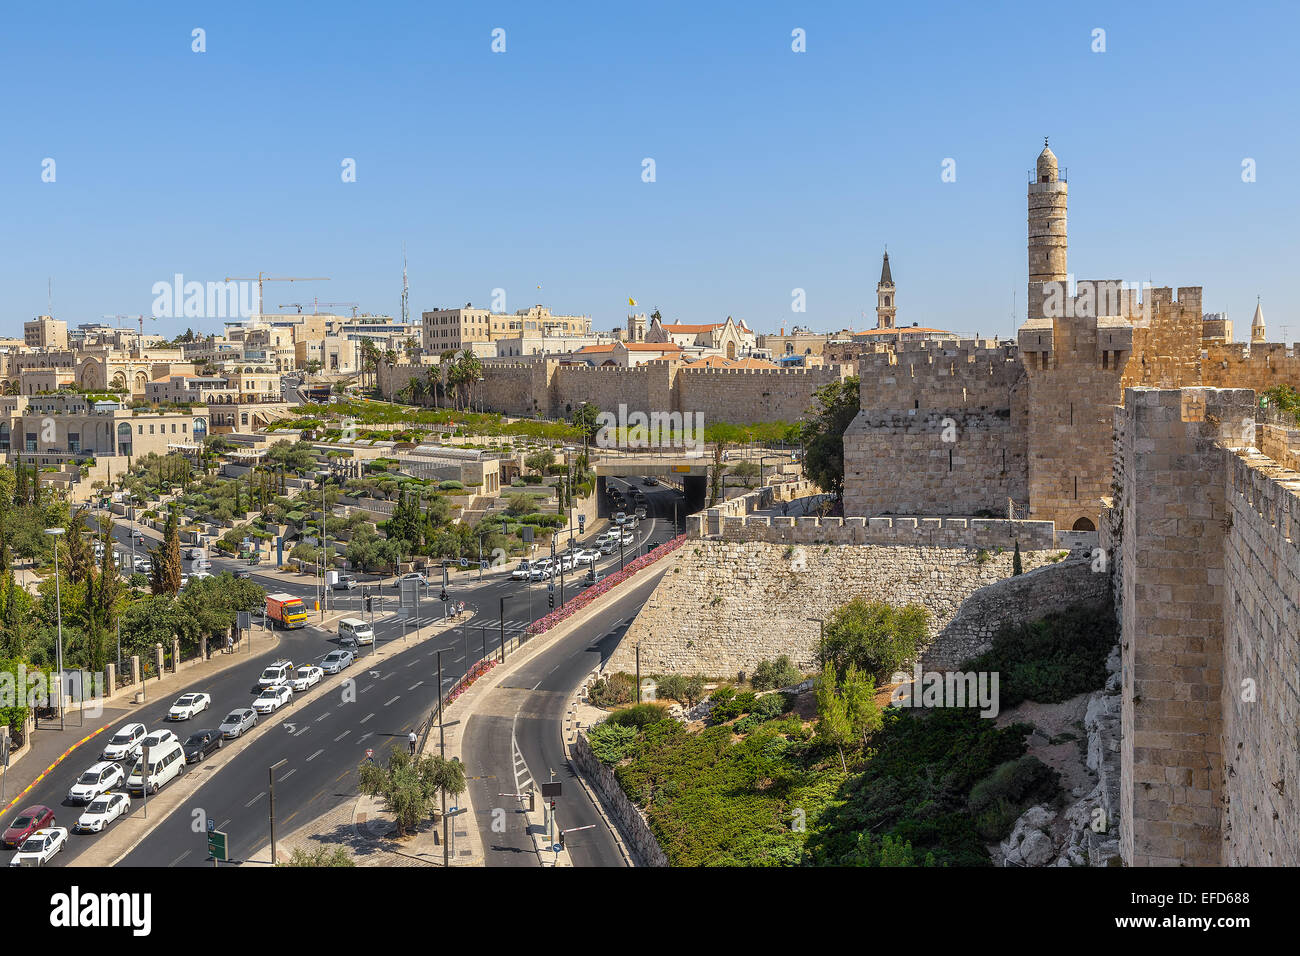 La Tour de David, Vieille Ville les murs environnants et vue sur la ville de Jérusalem, Israël. Banque D'Images